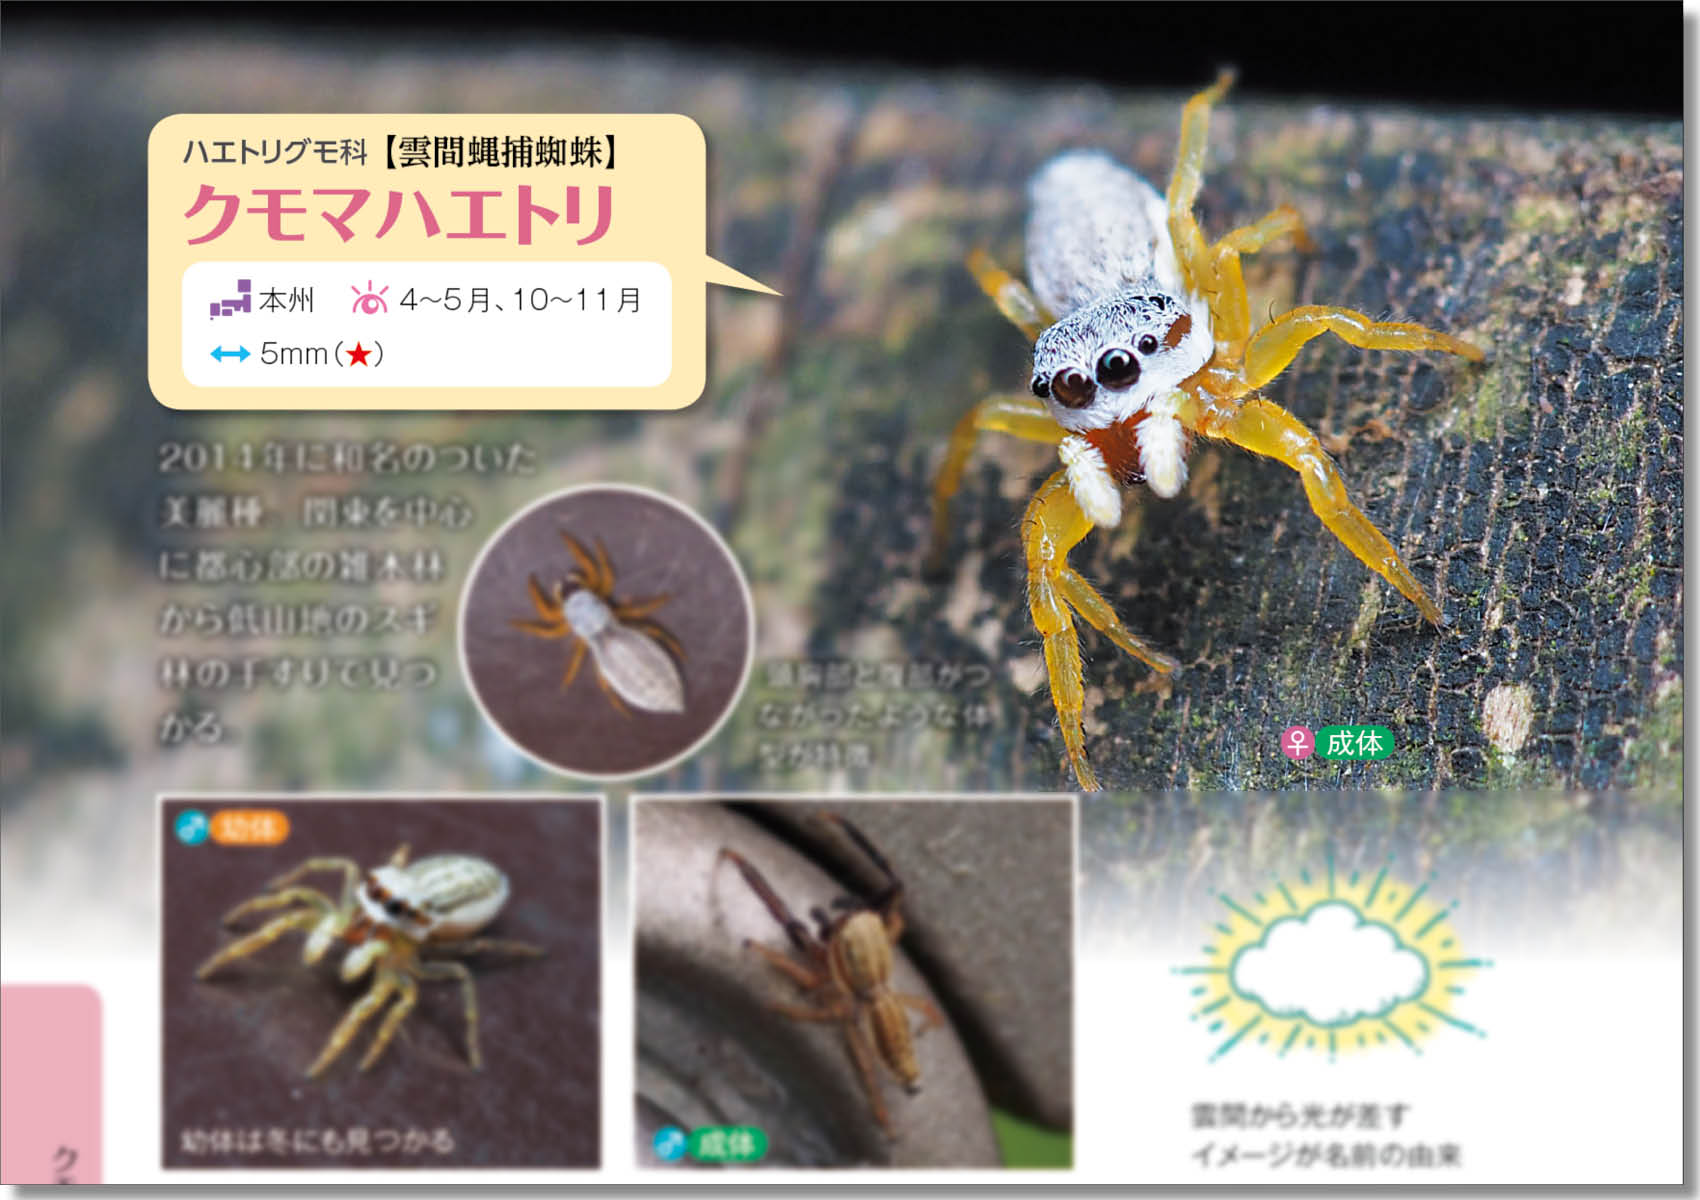 新種発見 ハエトリグモ博士と手すりの虫を観察してみた 記事カテゴリ Buna Bun Ichi Nature Web Magazine 文一総合出版